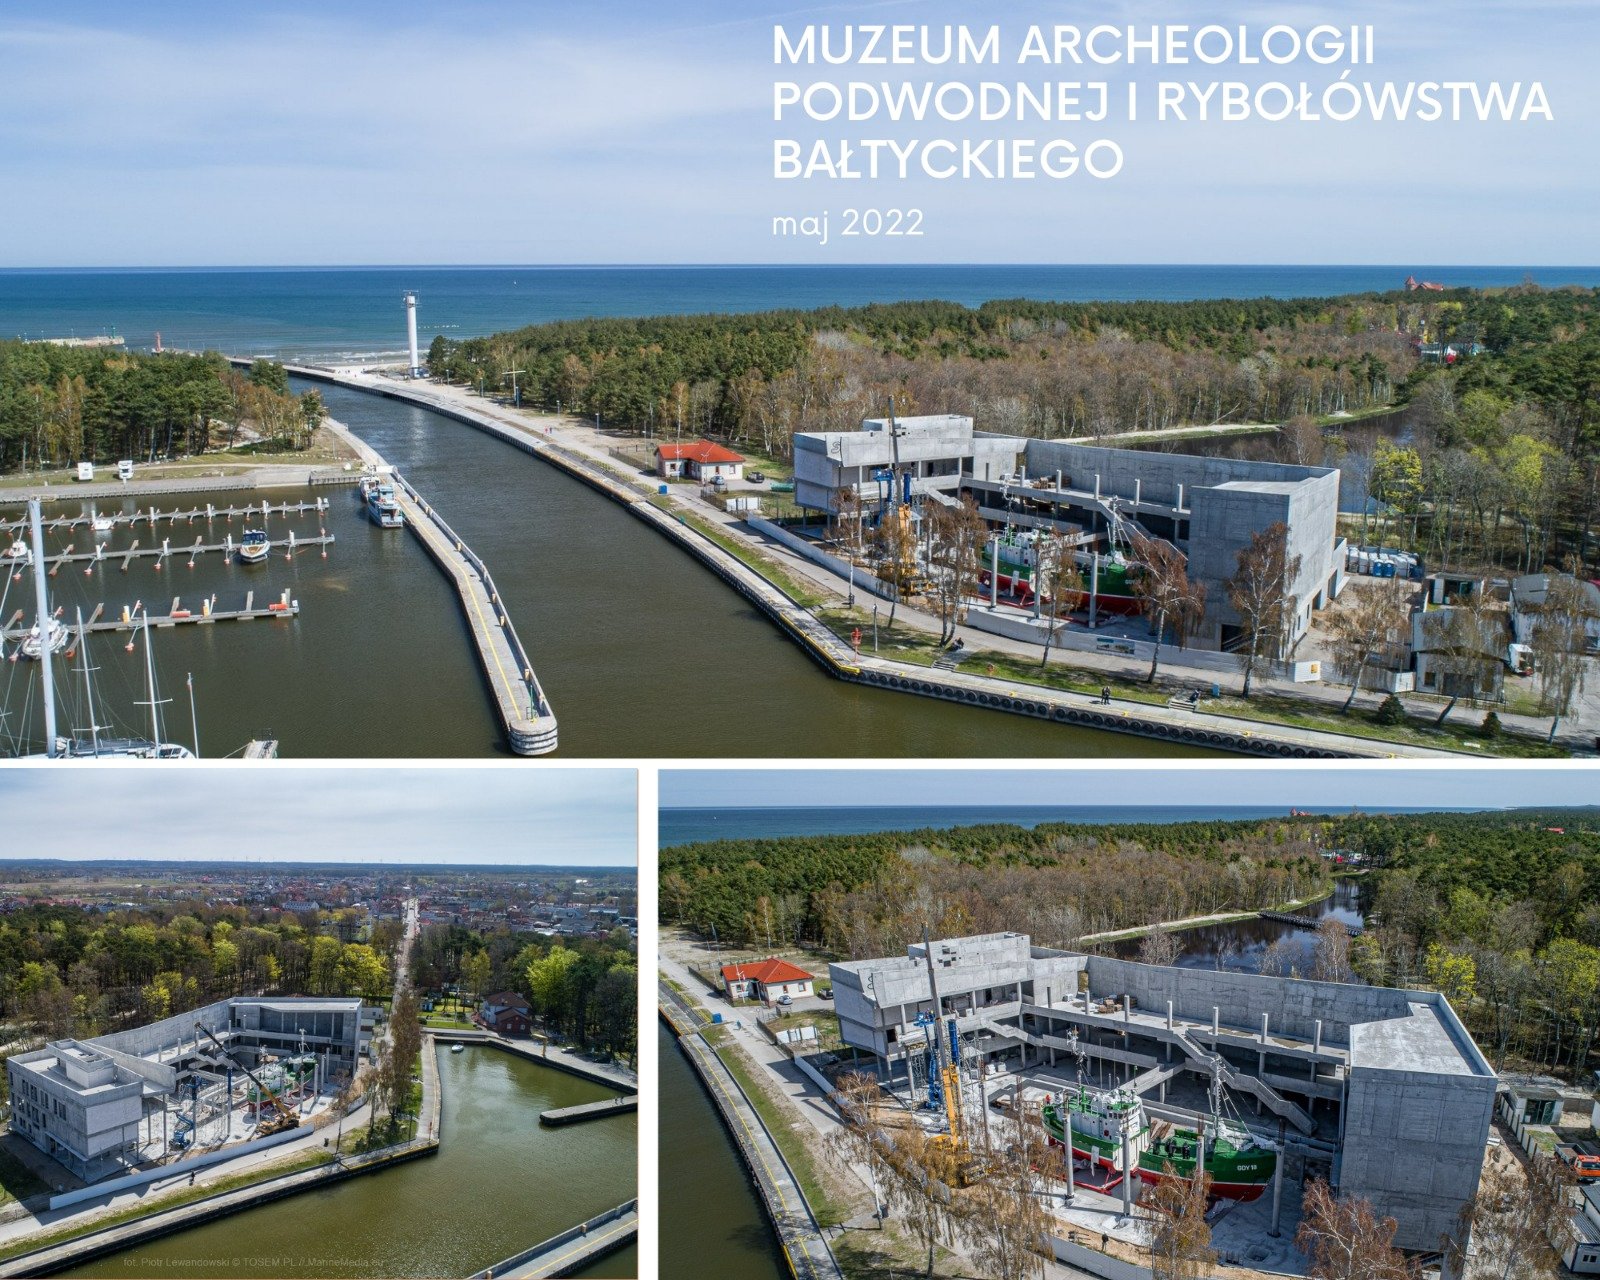 Budowa Muzeum Archeologii Podwodnej i Rybołówstwa Bałtyckiego w Łebie trwa